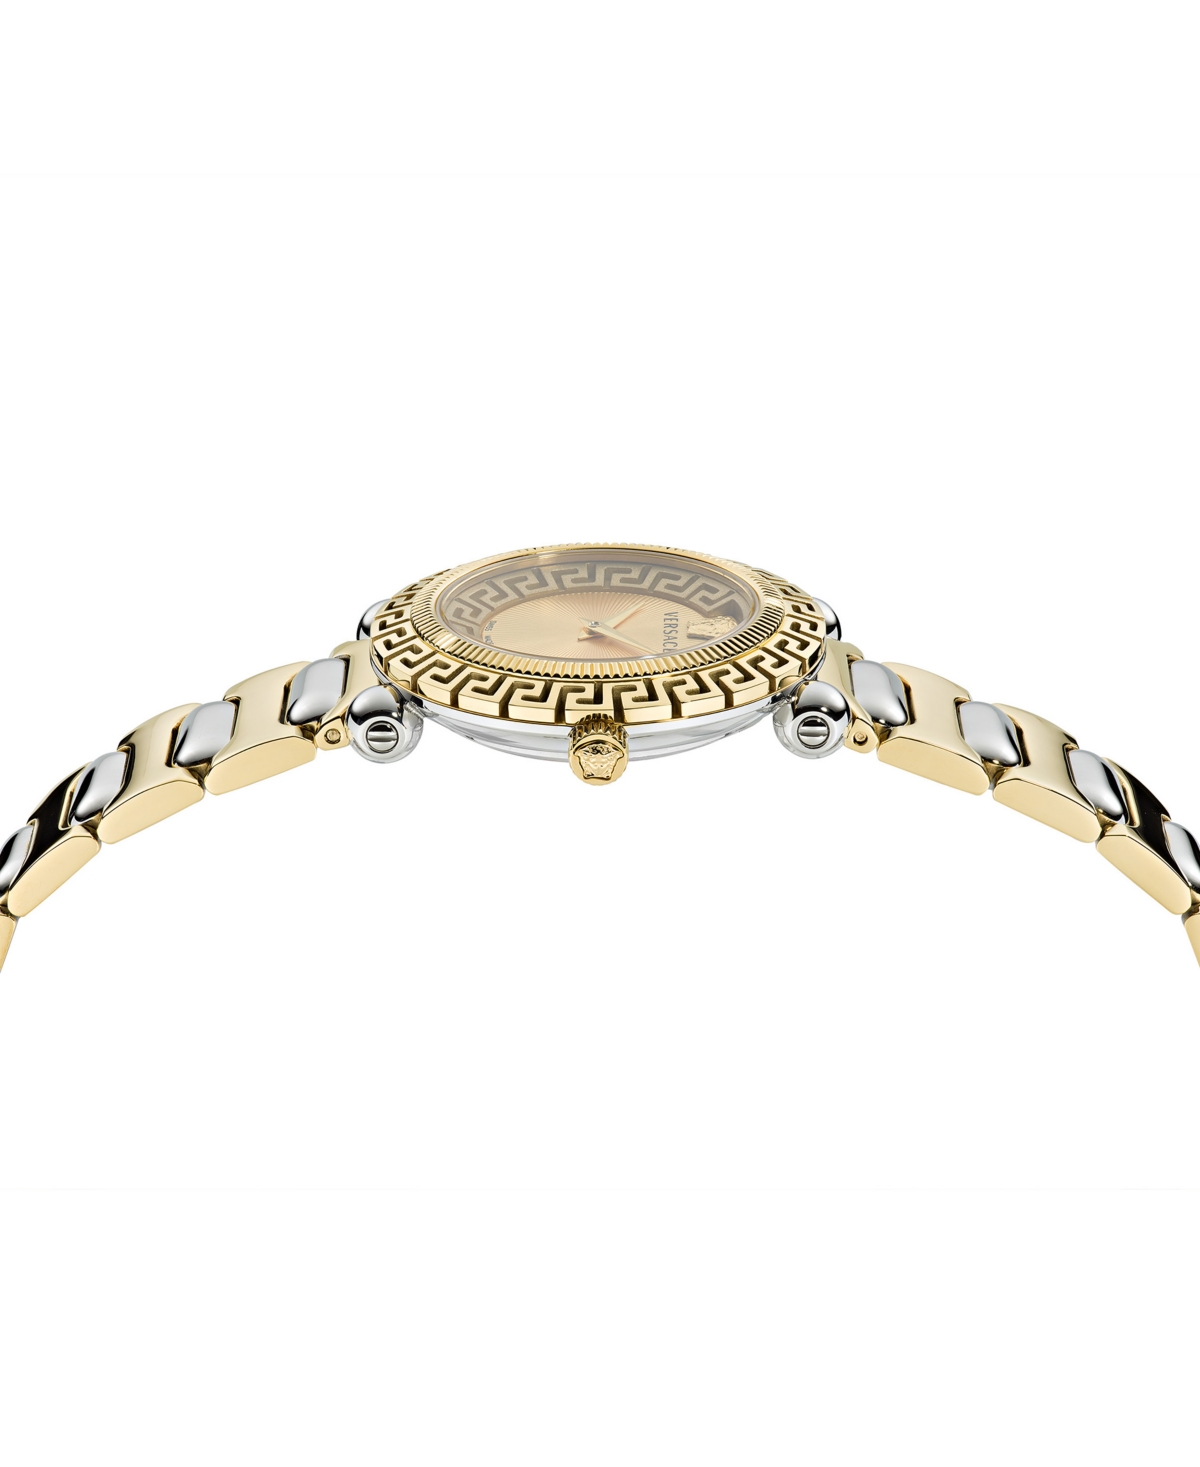 Shop Versace Women's Swiss Greca Twist Two Tone Bracelet Watch 35mm